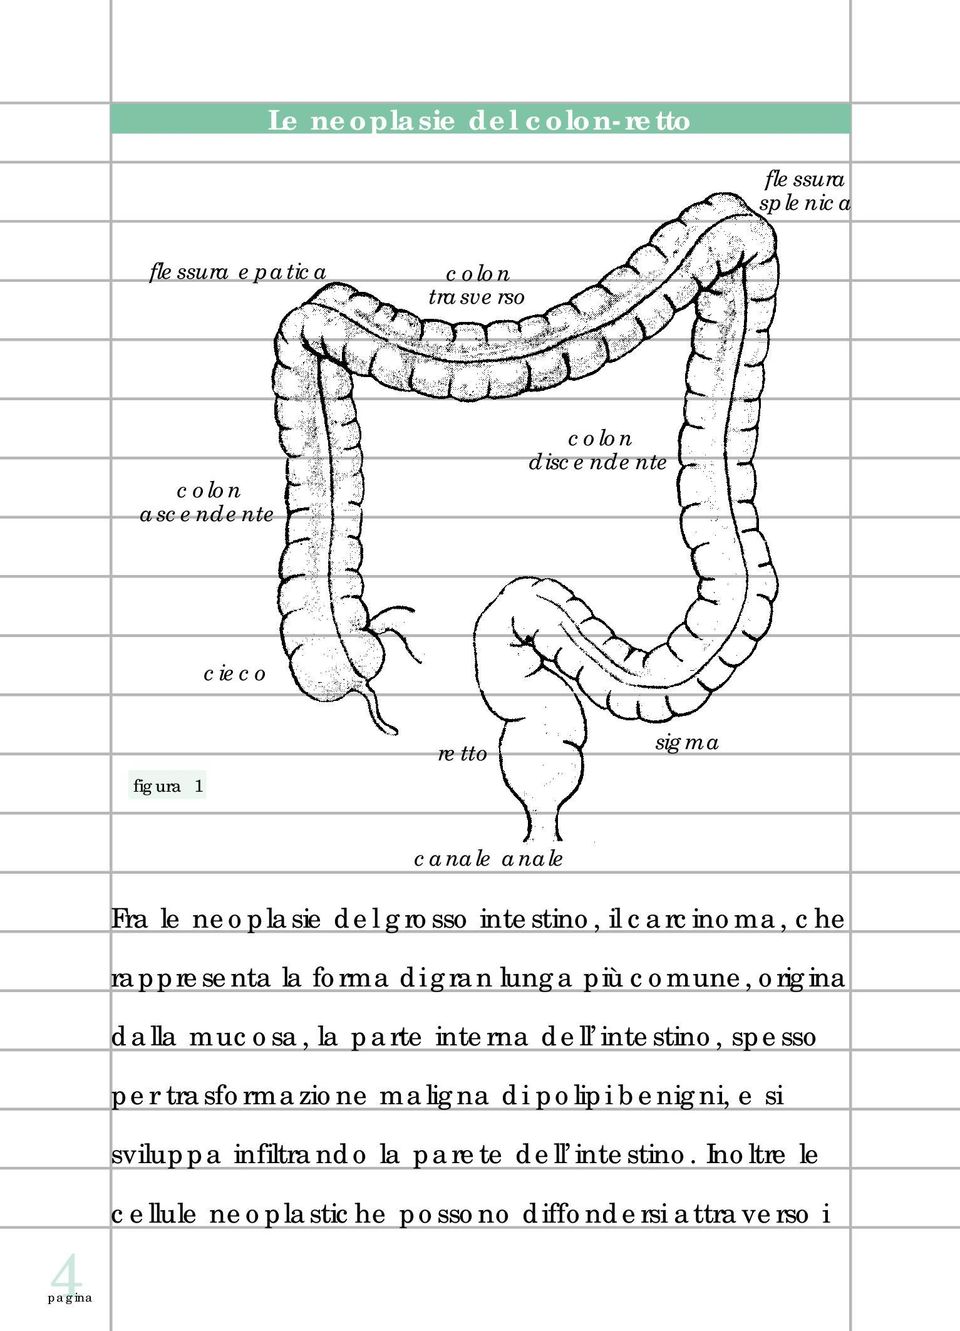 lunga più comune, origina dalla mucosa, la parte interna dell intestino, spesso per trasformazione maligna di polipi